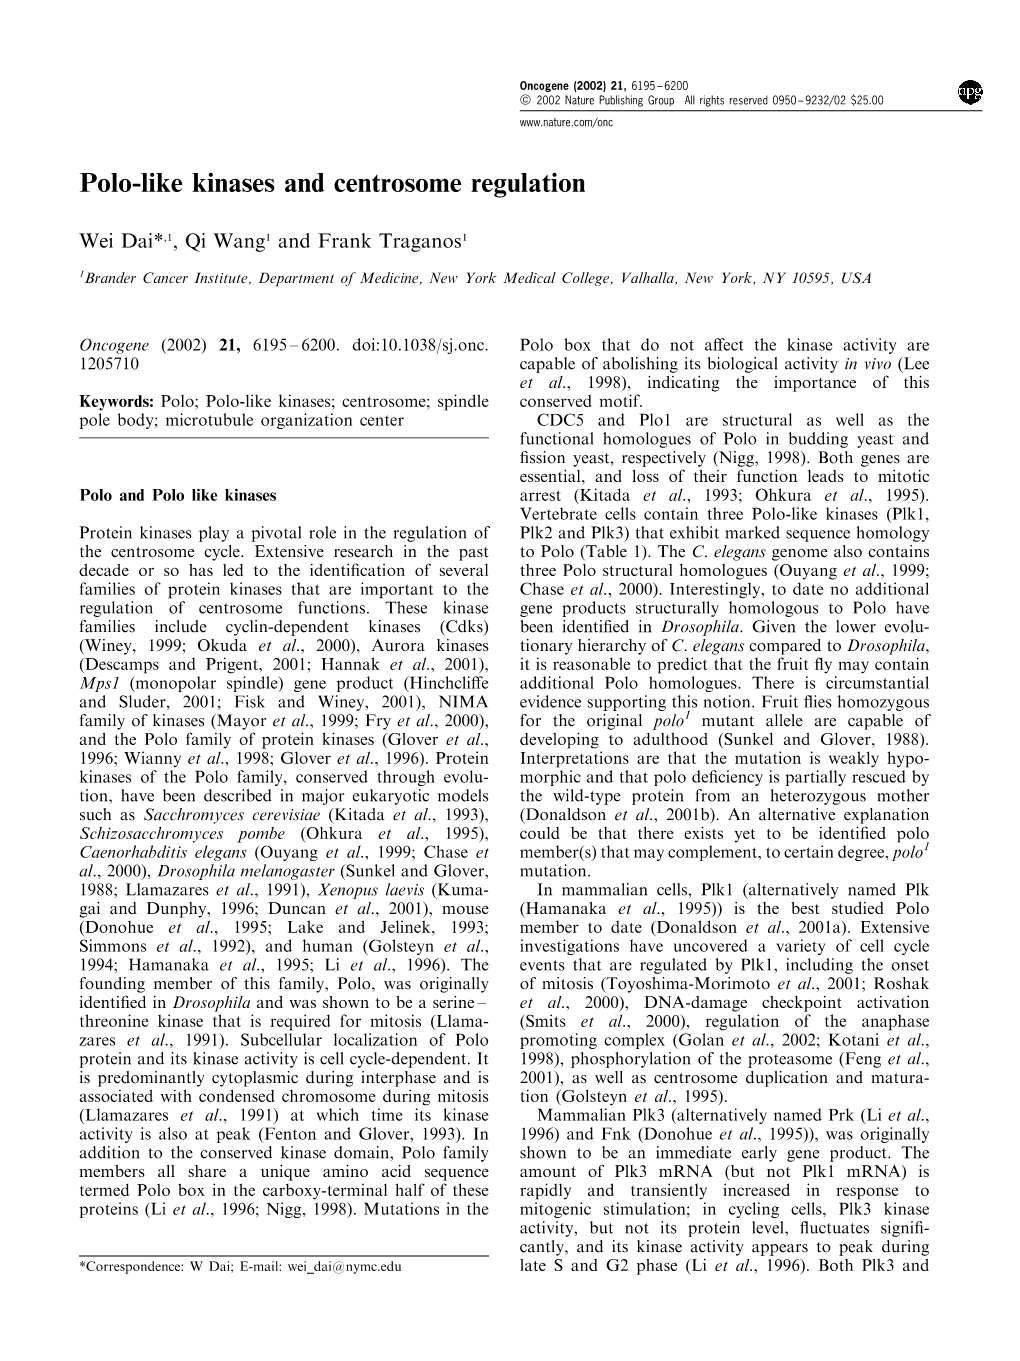 Polo-Like Kinases and Centrosome Regulation